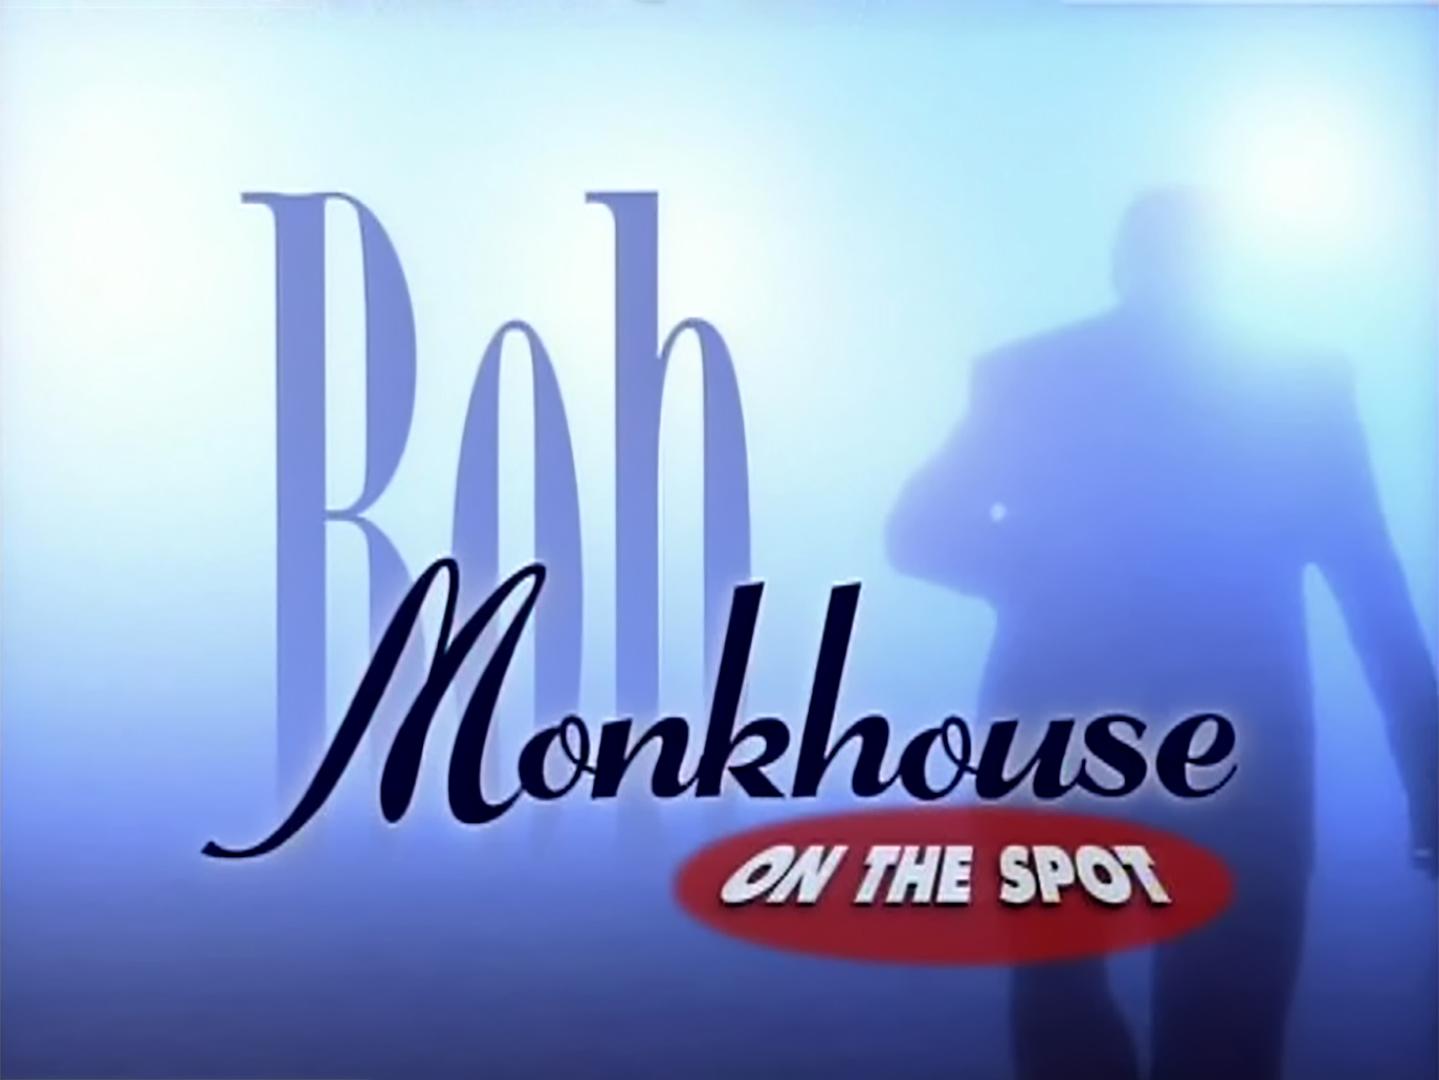 Bob Monkhouse on the Spot